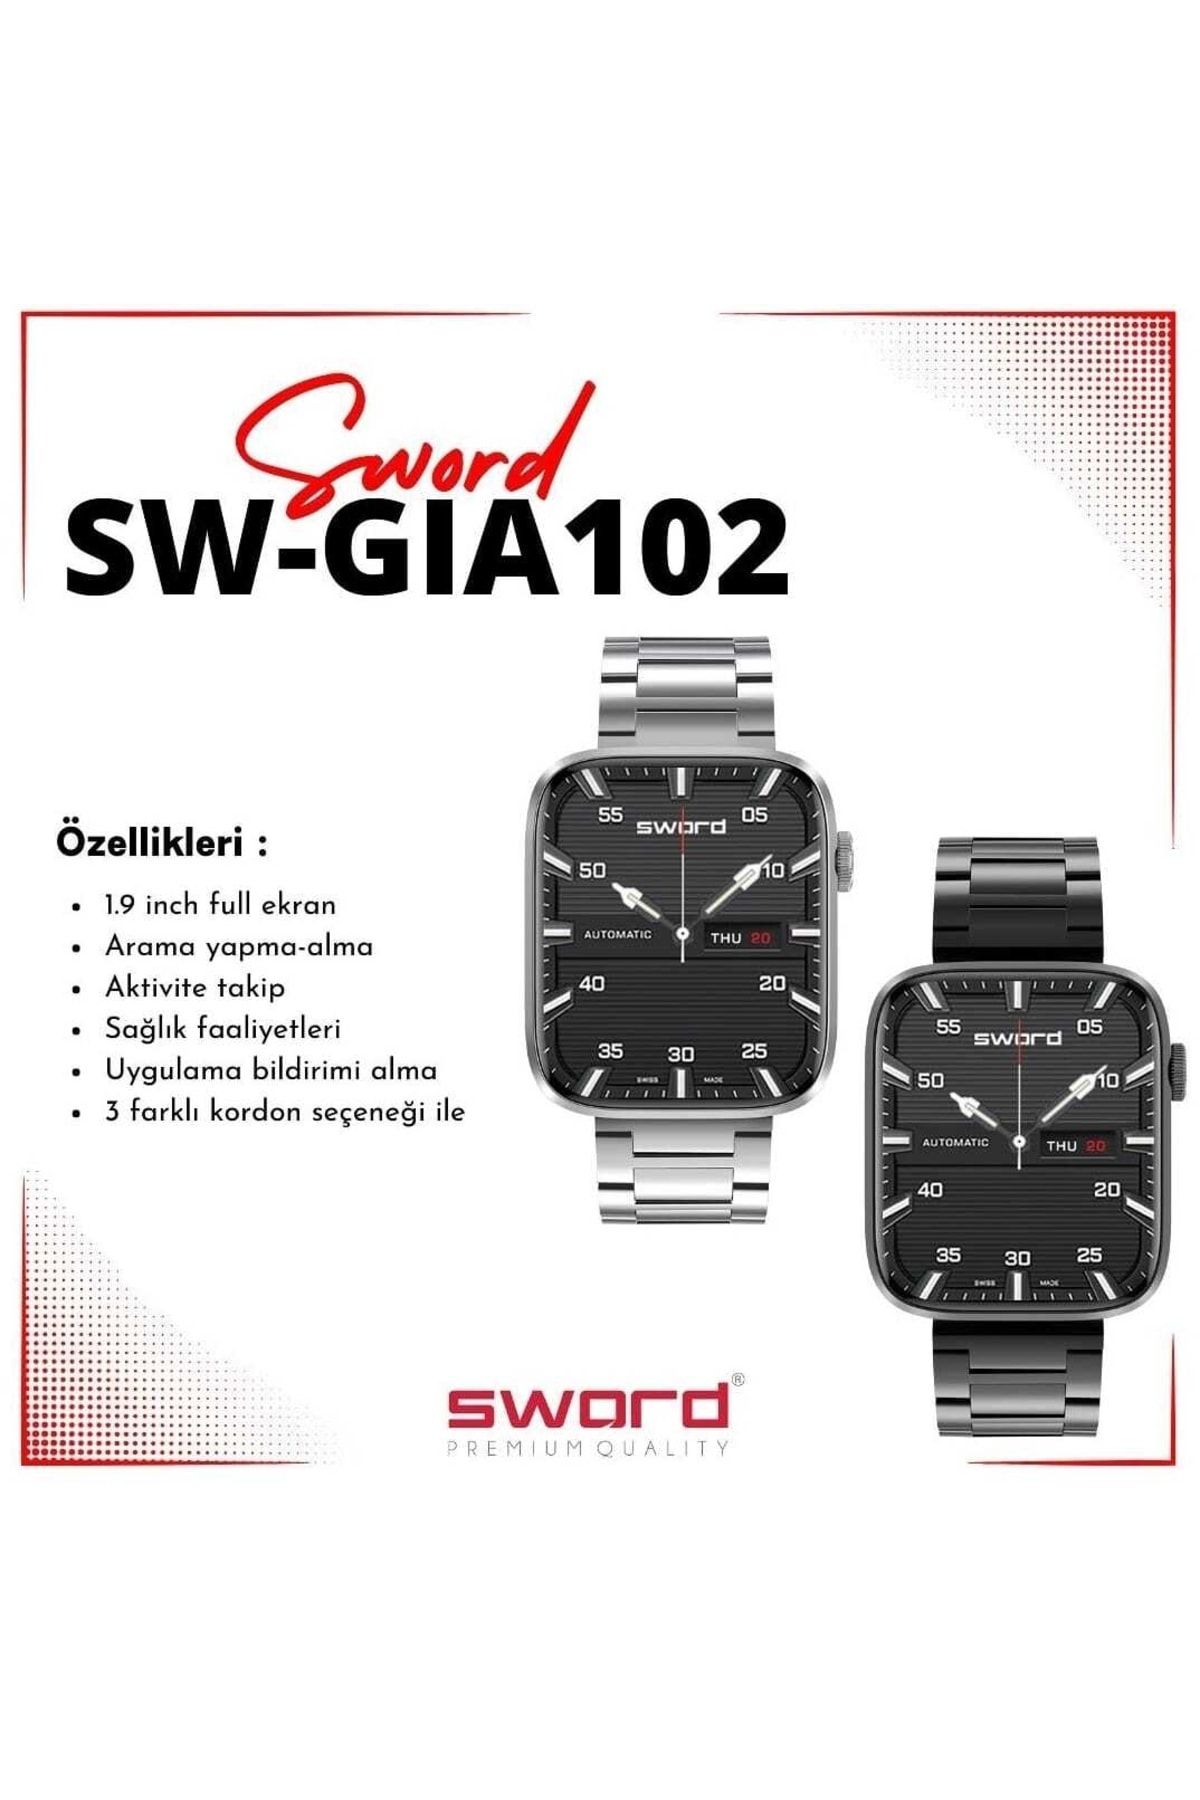 SWORD Smart Watch Gıa2 Sw-gıa102 Siyah 3farklı Kordon Ile